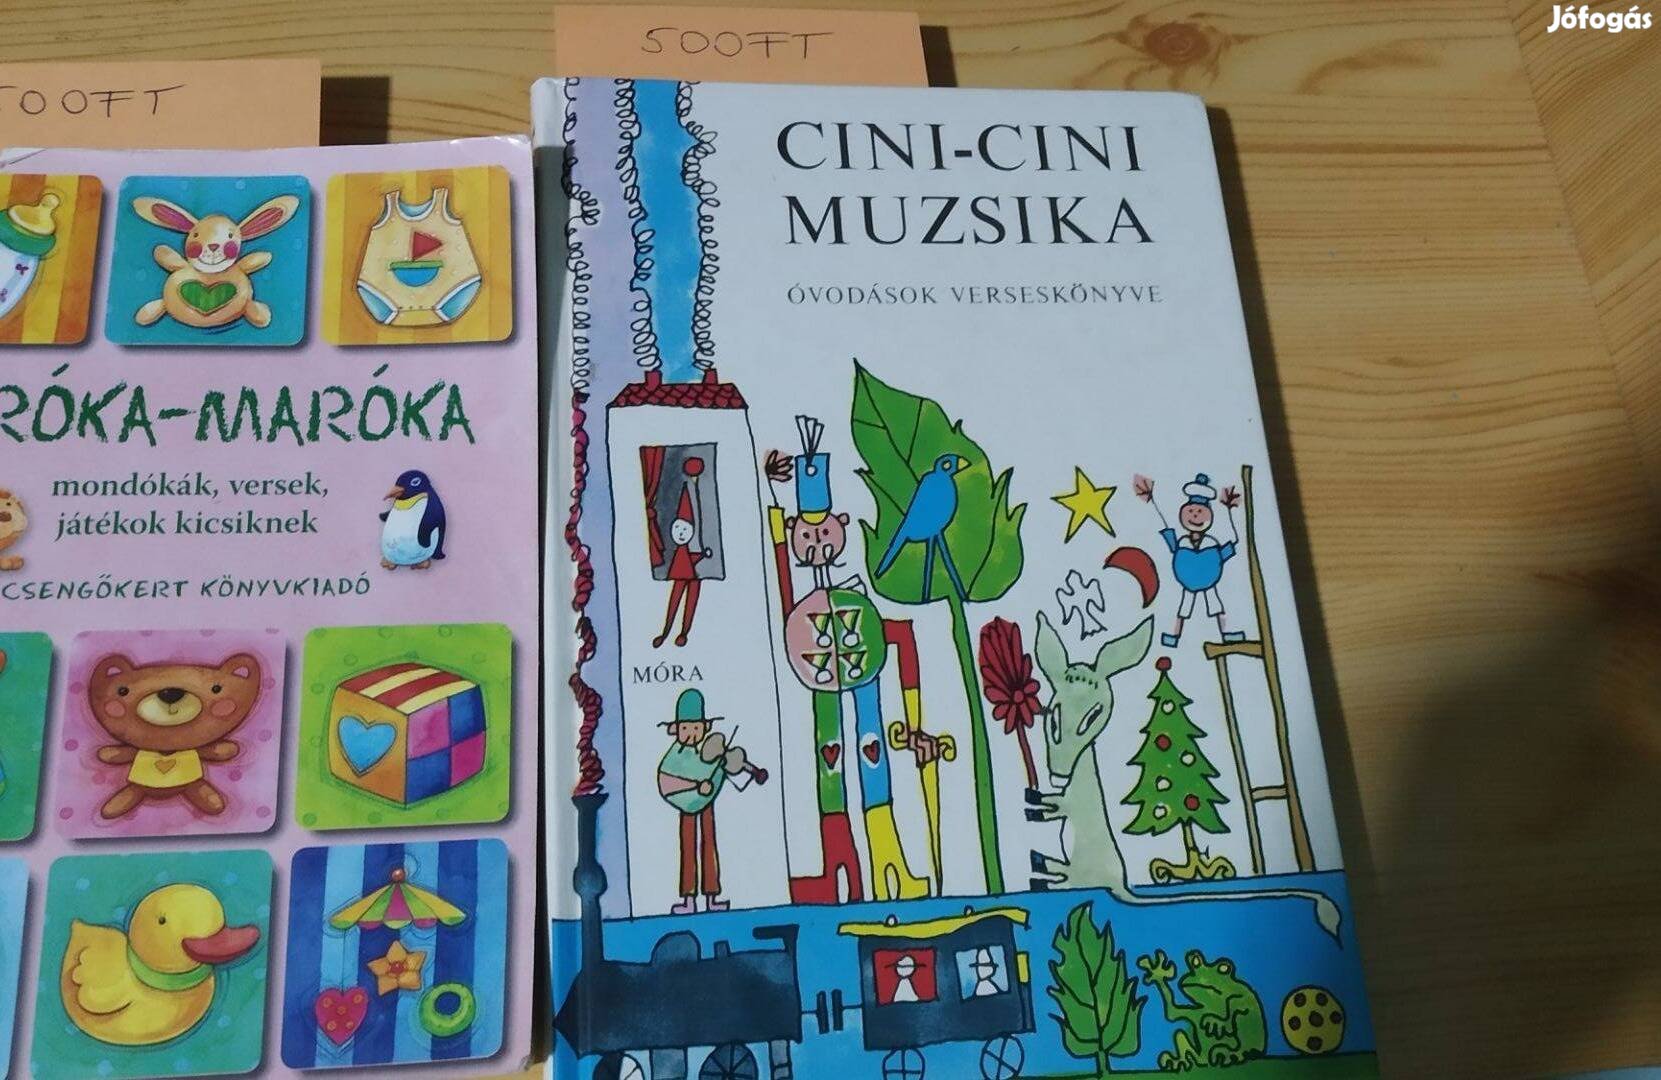 Cini-Cini Muzsika, Ciróka-Maróka gyermek könyvek mondókák, versek